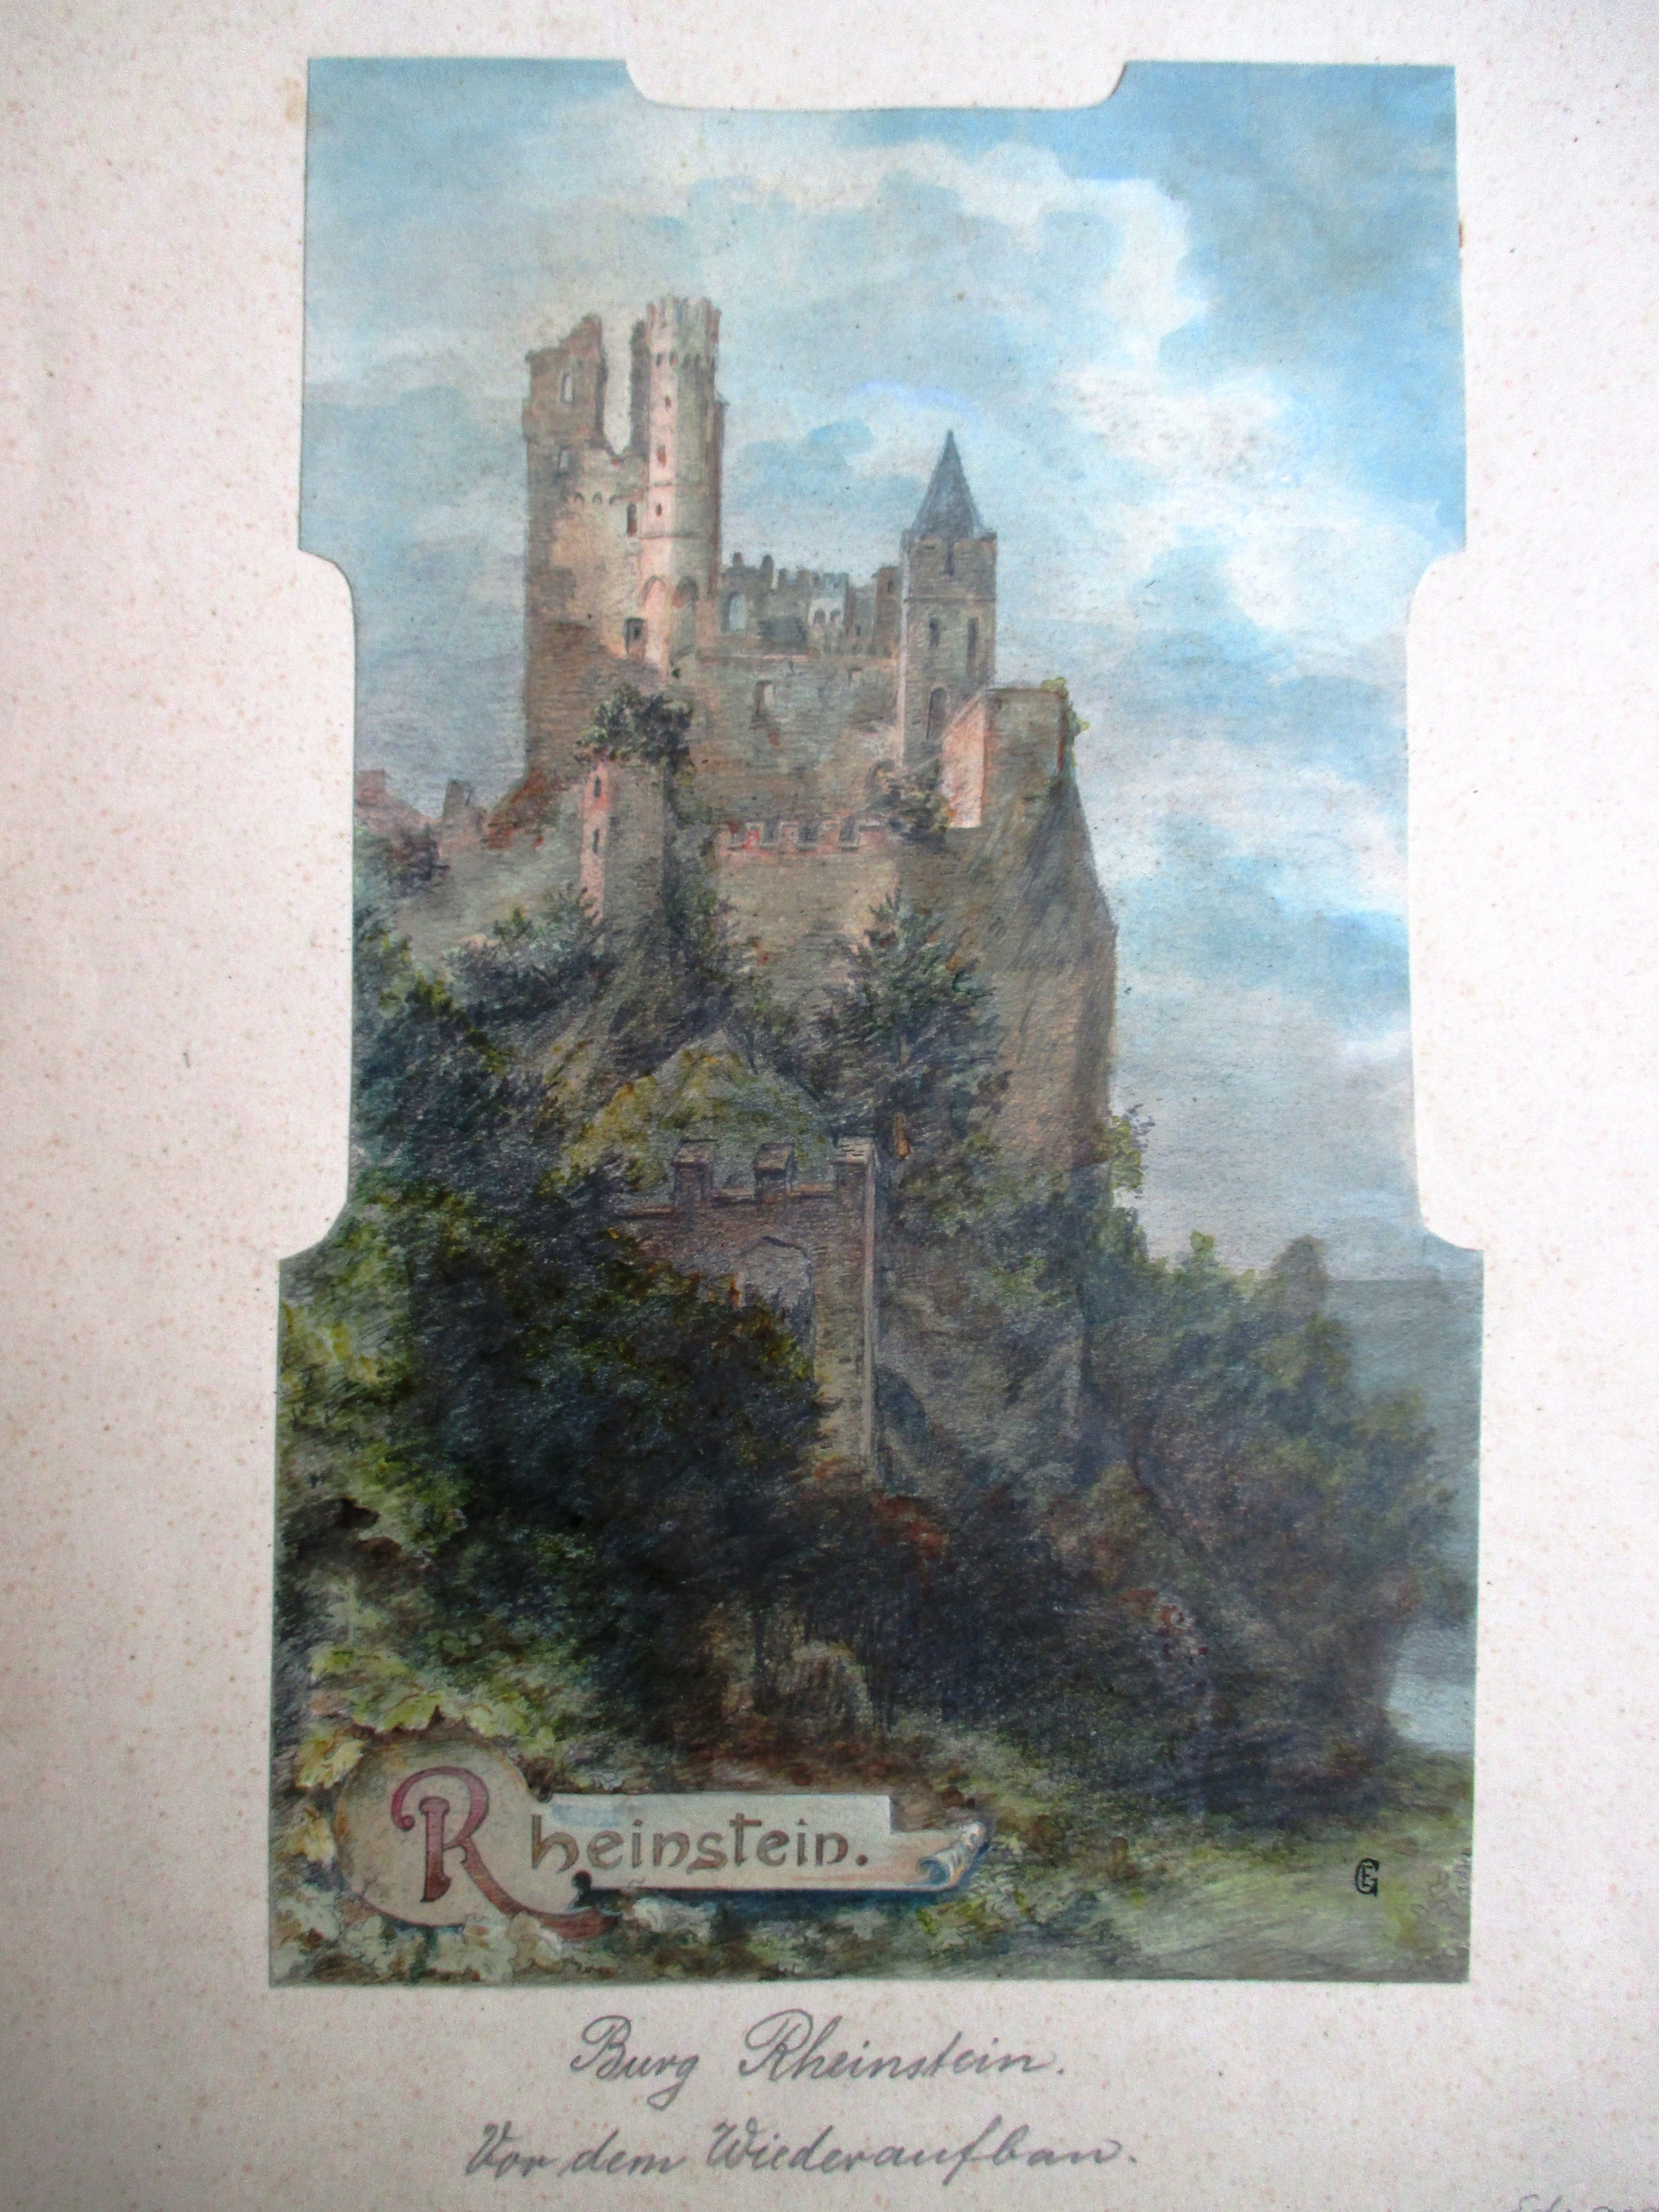 Burg Rheinstein - Vor dem Wiederaufbau - Was sich die Rheinburgen erzählen (Deutsches Märchen- und Wesersagenmuseum CC BY-NC-SA)